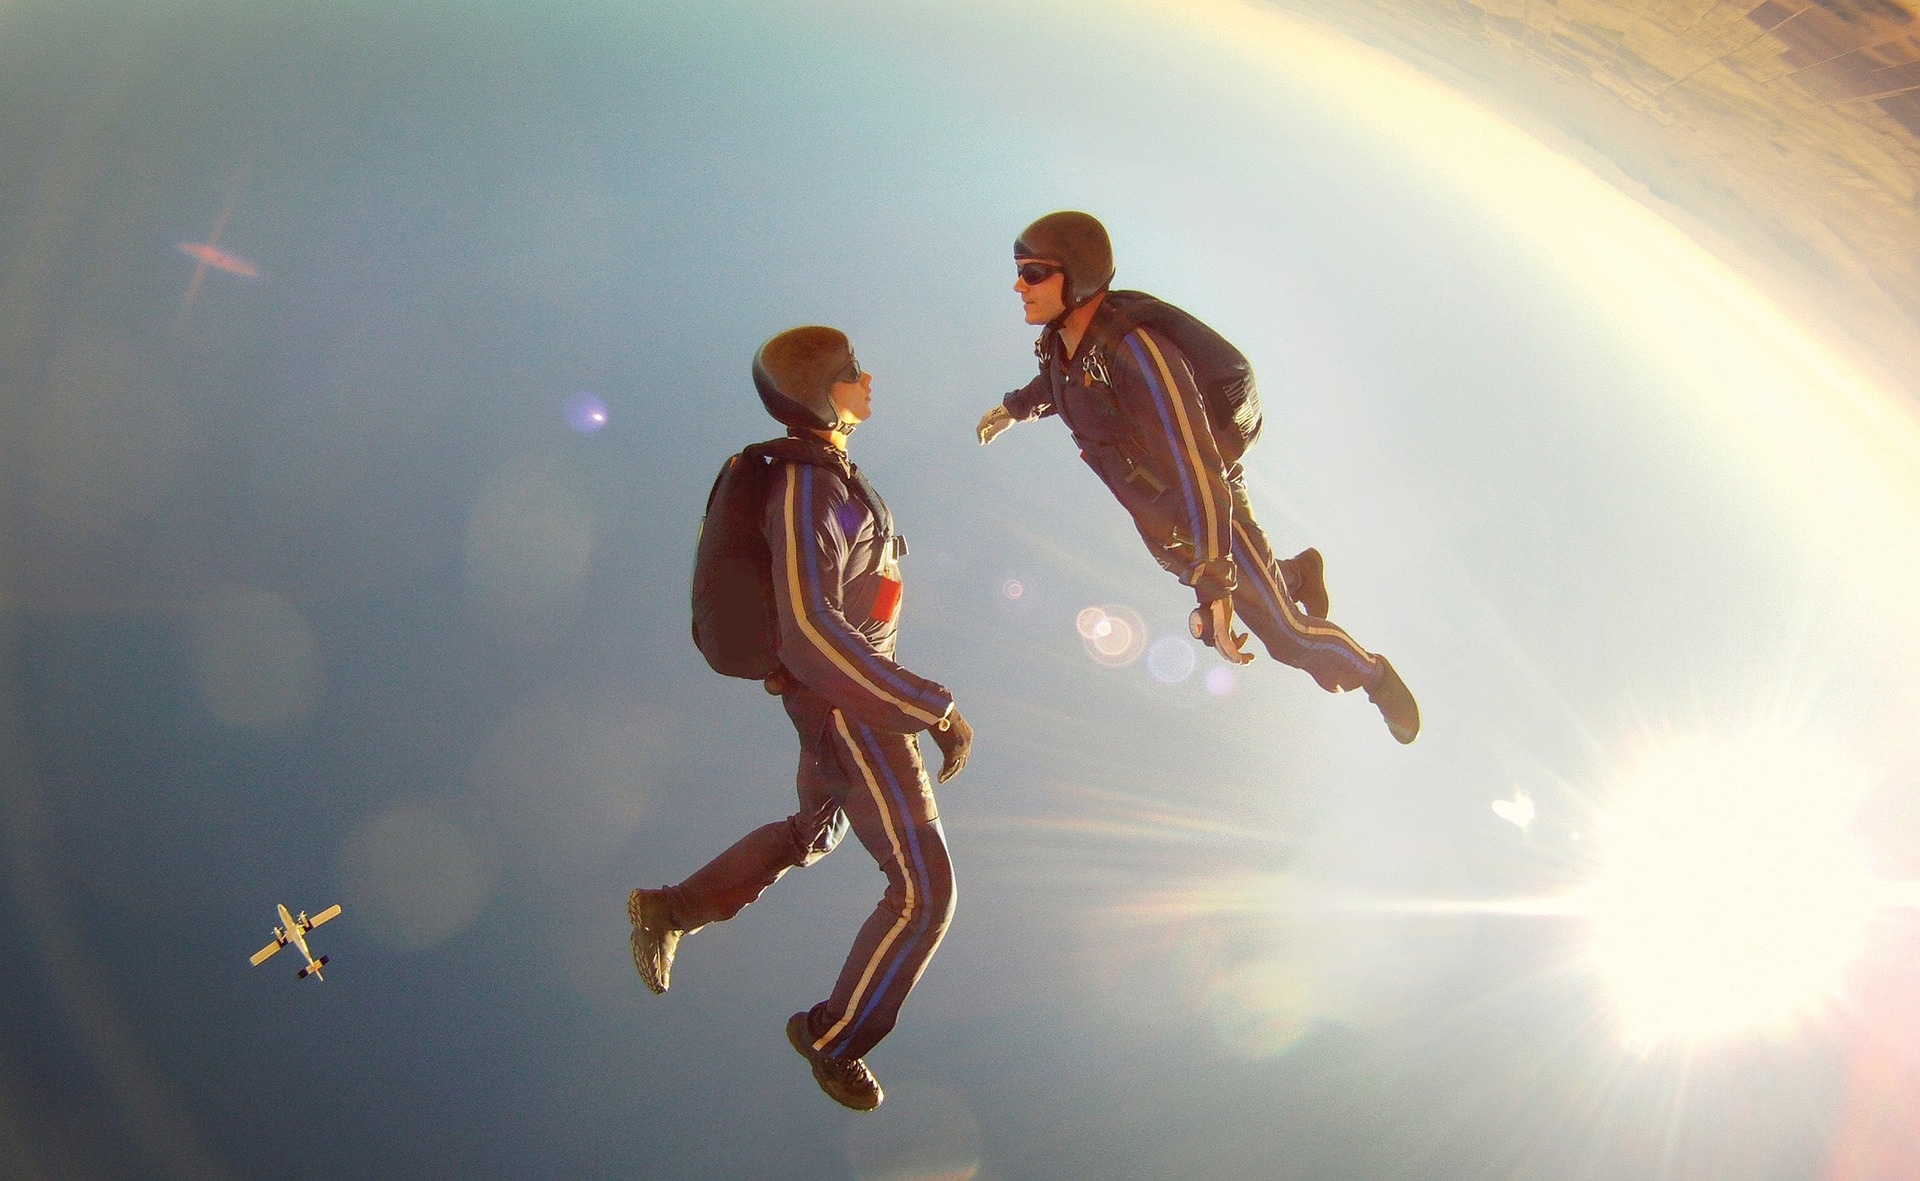 Un instructeur de sauts en parachute avec un élève en pleine chute libre.